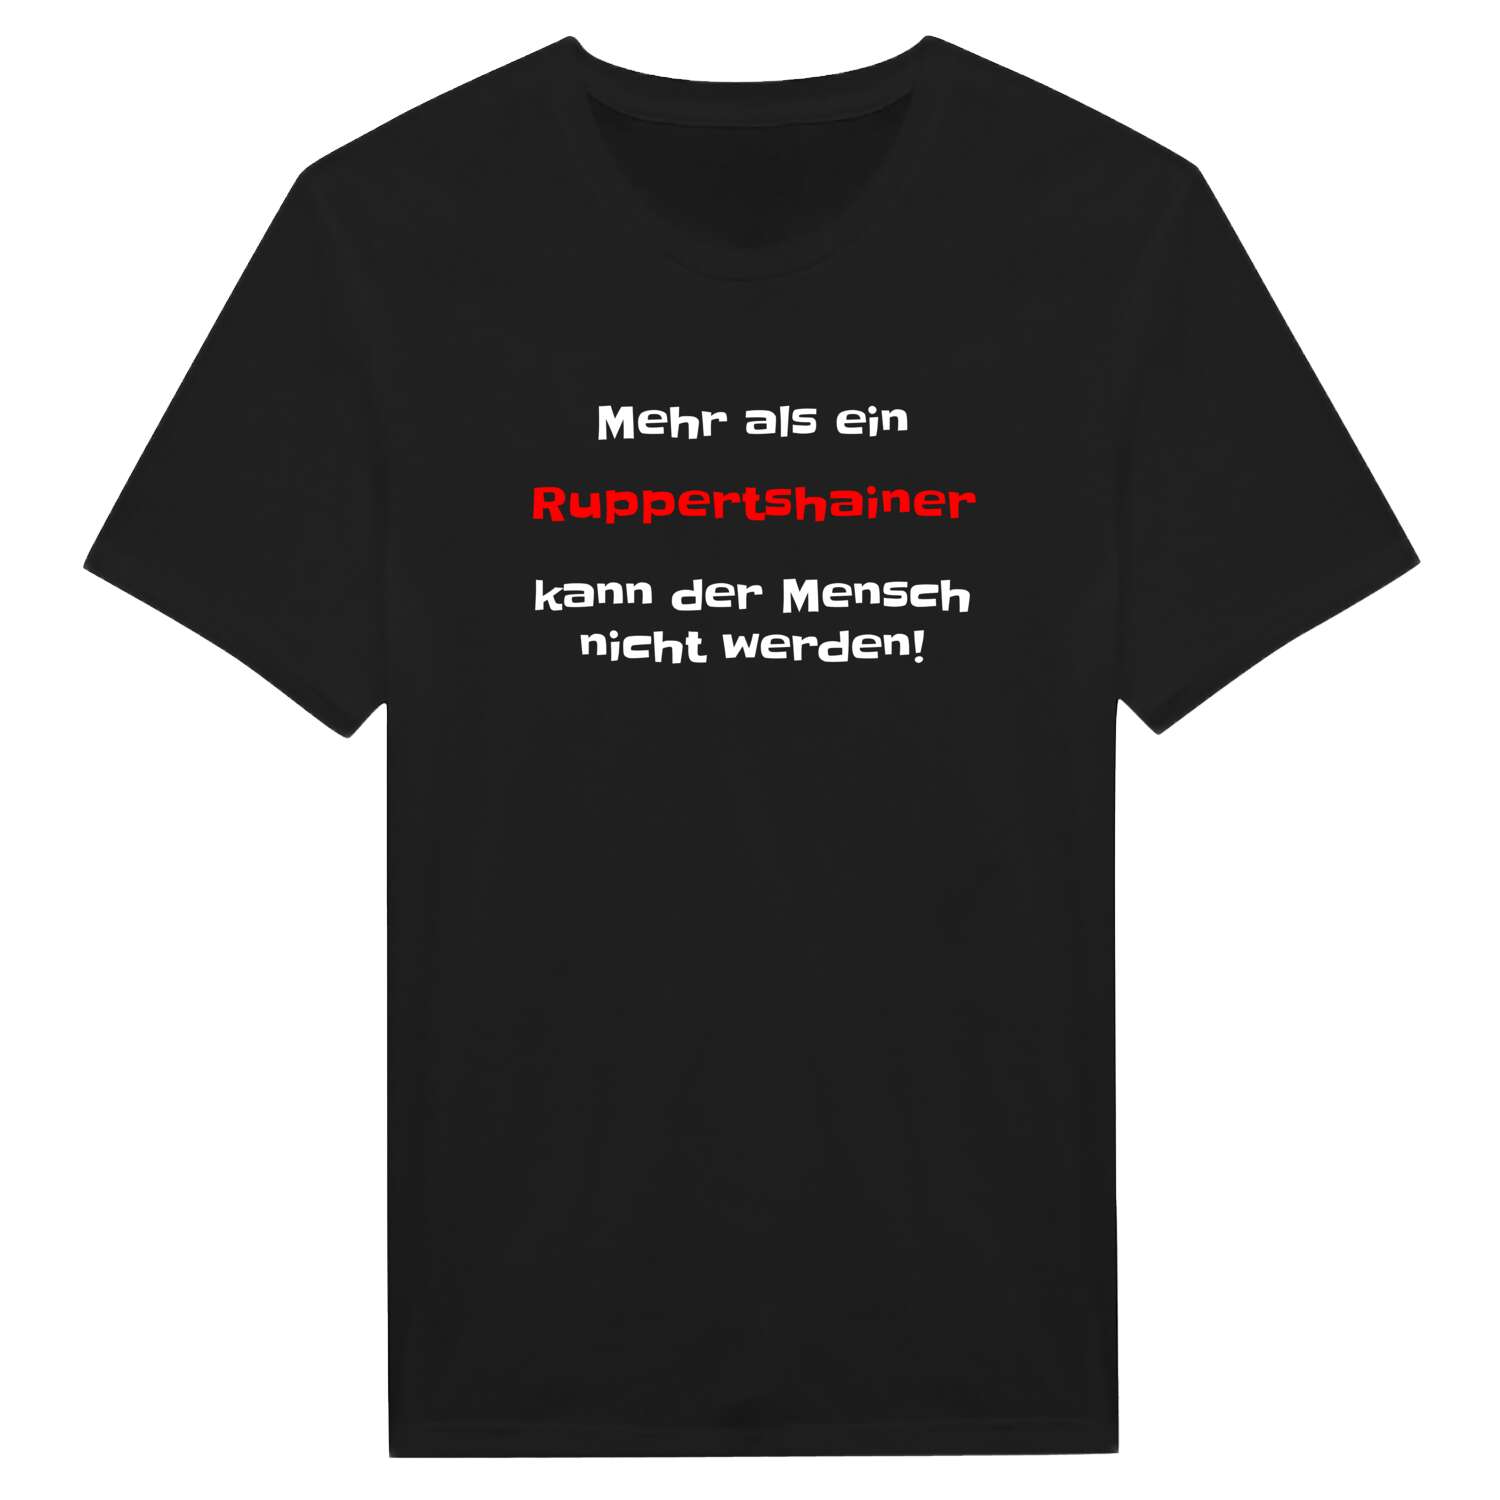 Ruppertshain T-Shirt »Mehr als ein«